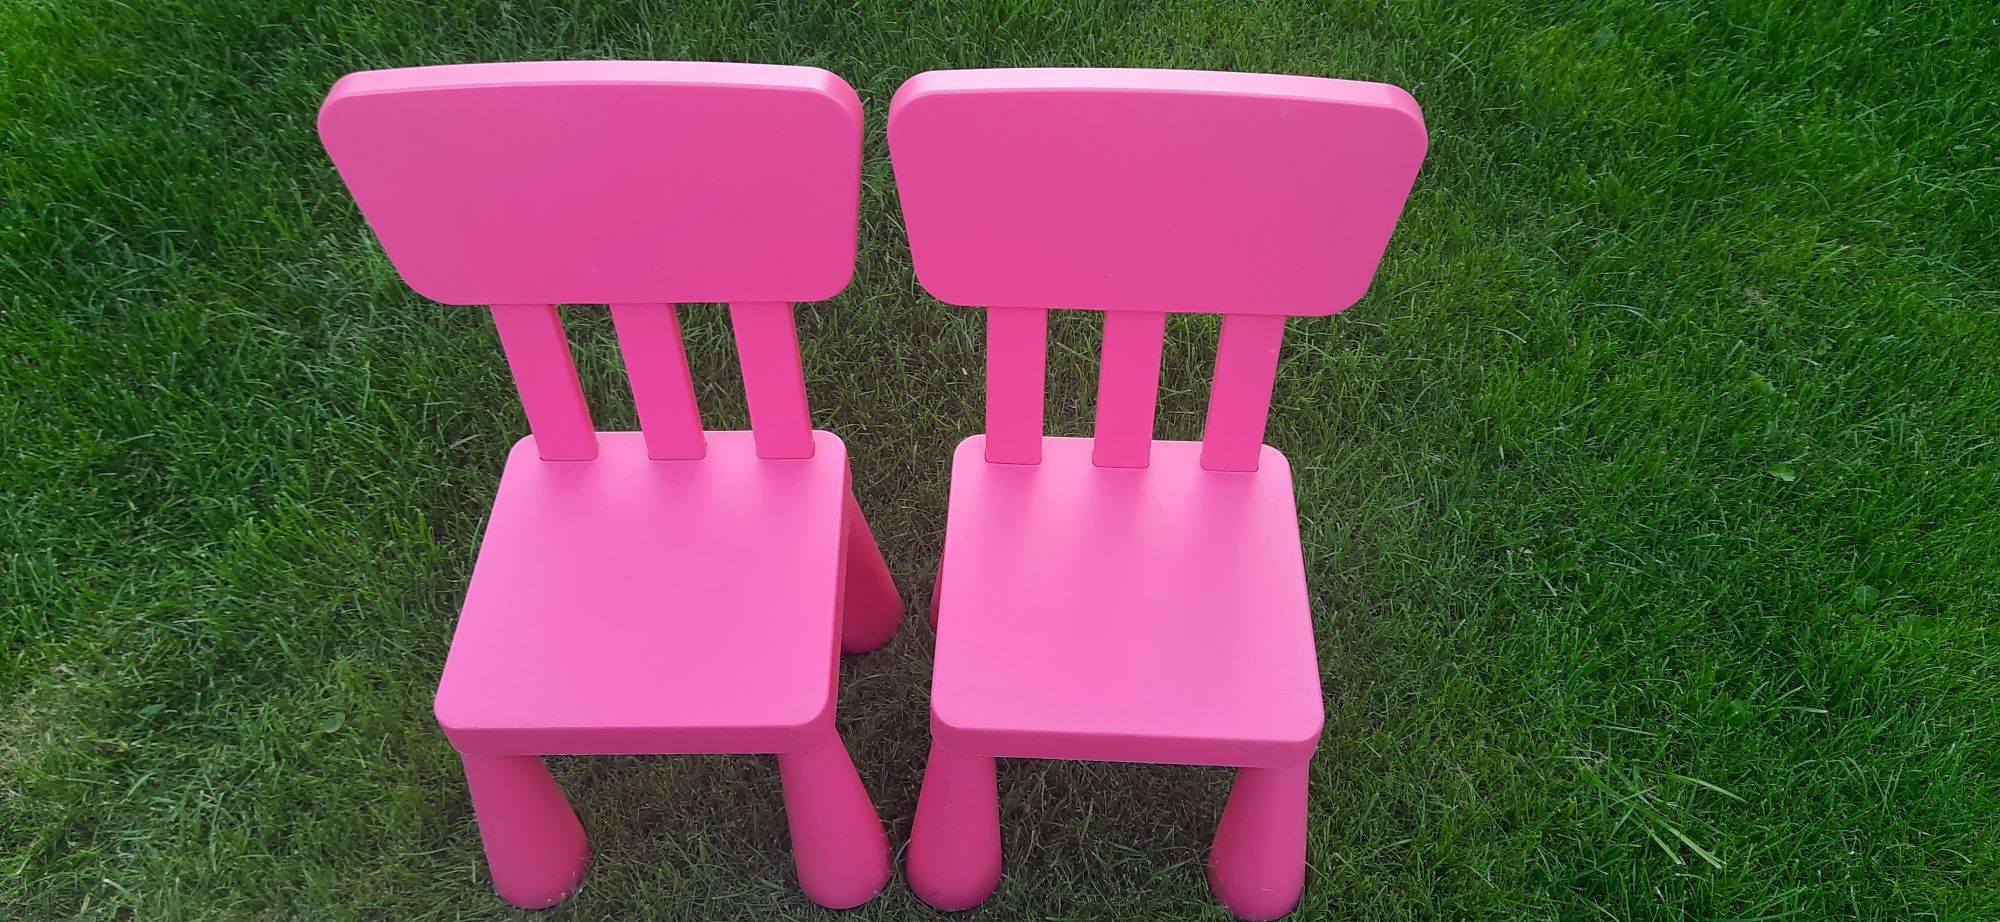 Ikea Mammut zestaw stół i dwa krzesła różowe Mamut